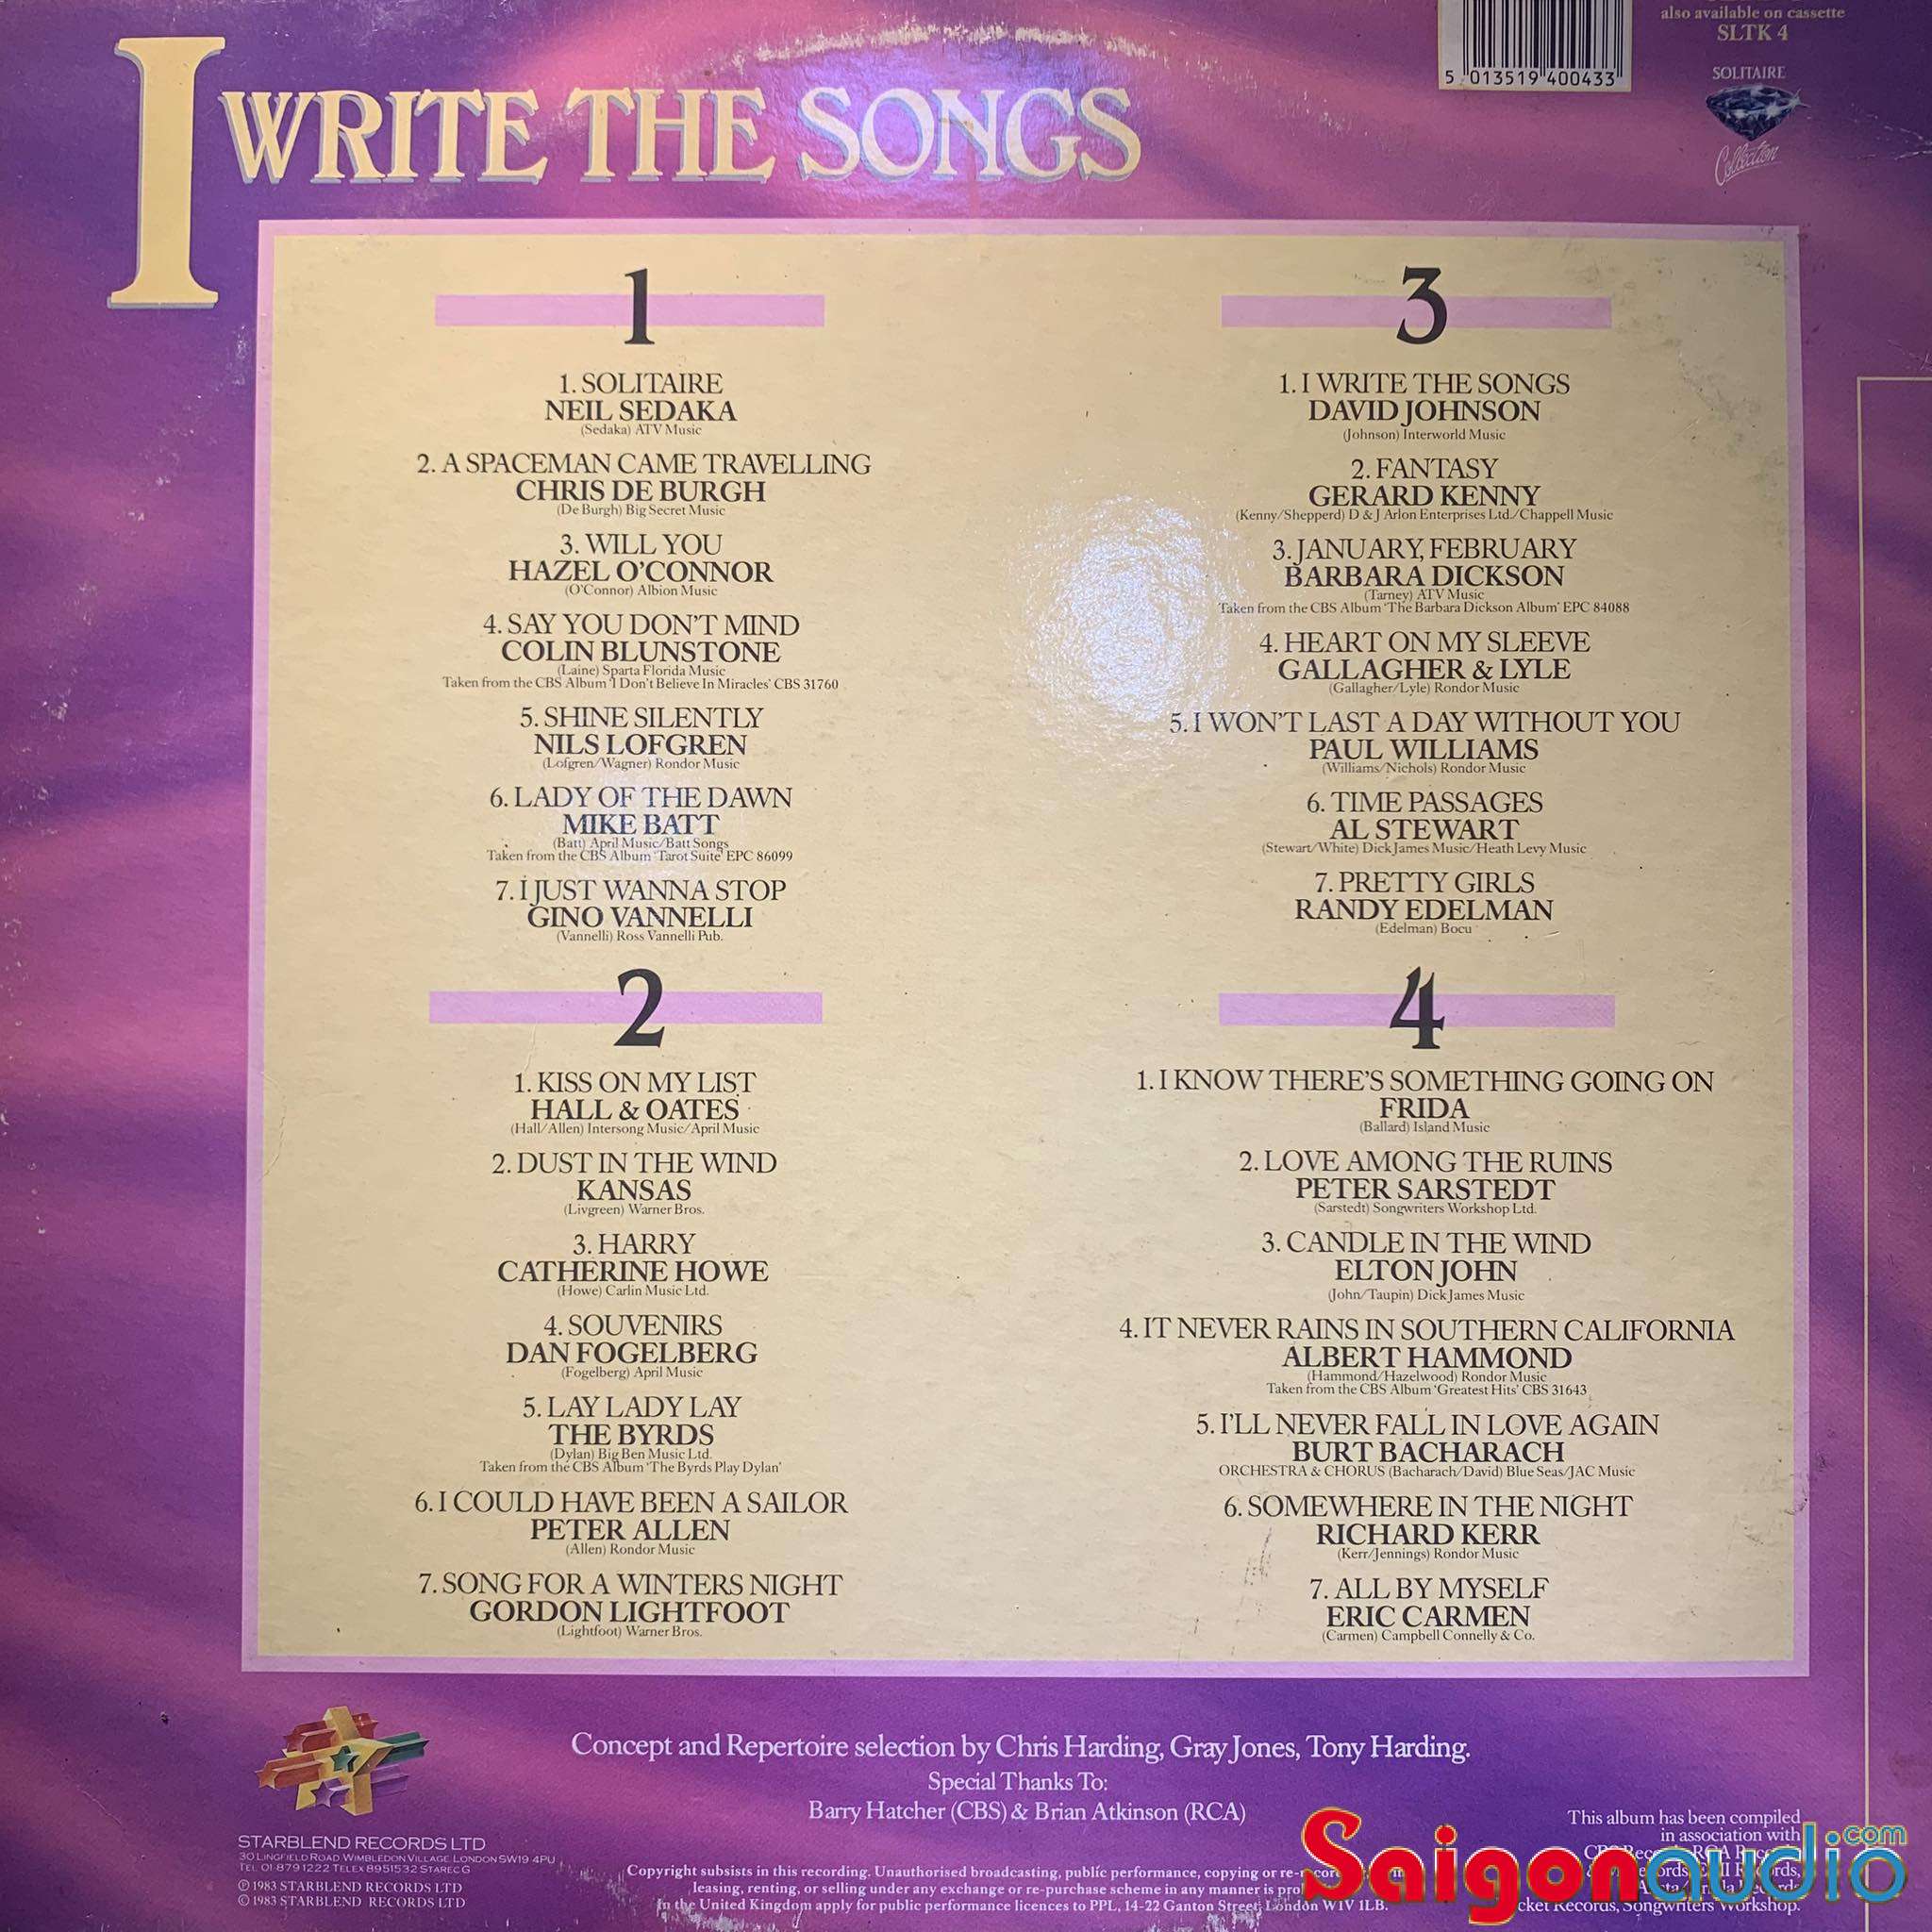 Đĩa than (bộ 2 đĩa) Nhiều ca sĩ - 28 Songs Of Love And Special Things | LP Vinyl Records